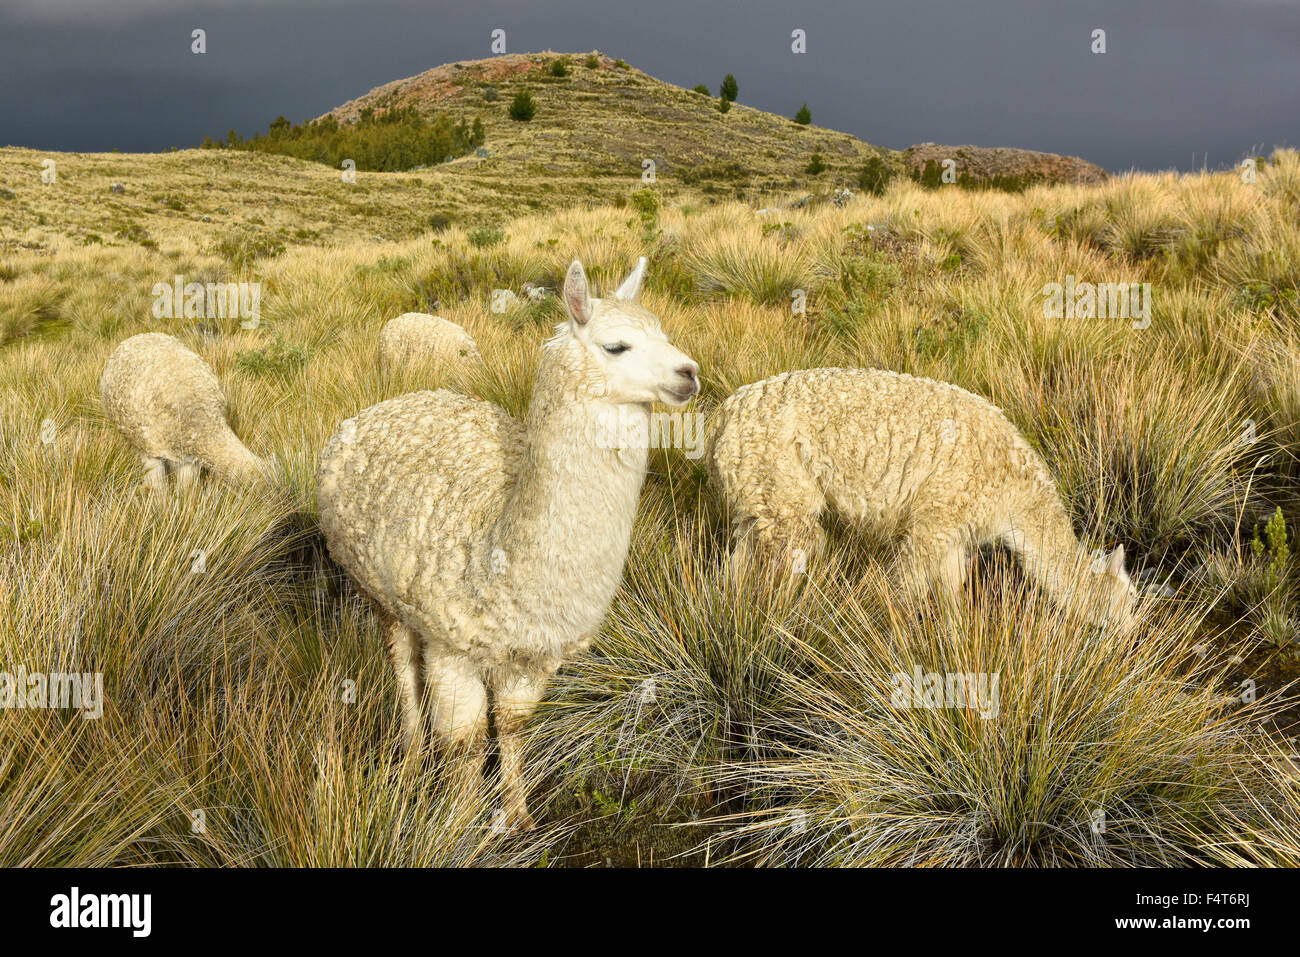 South America, Latin America, Peru, Lake Titicaca, Suasi Island, Alpacas, mammal, animal, wildlife Stock Photo